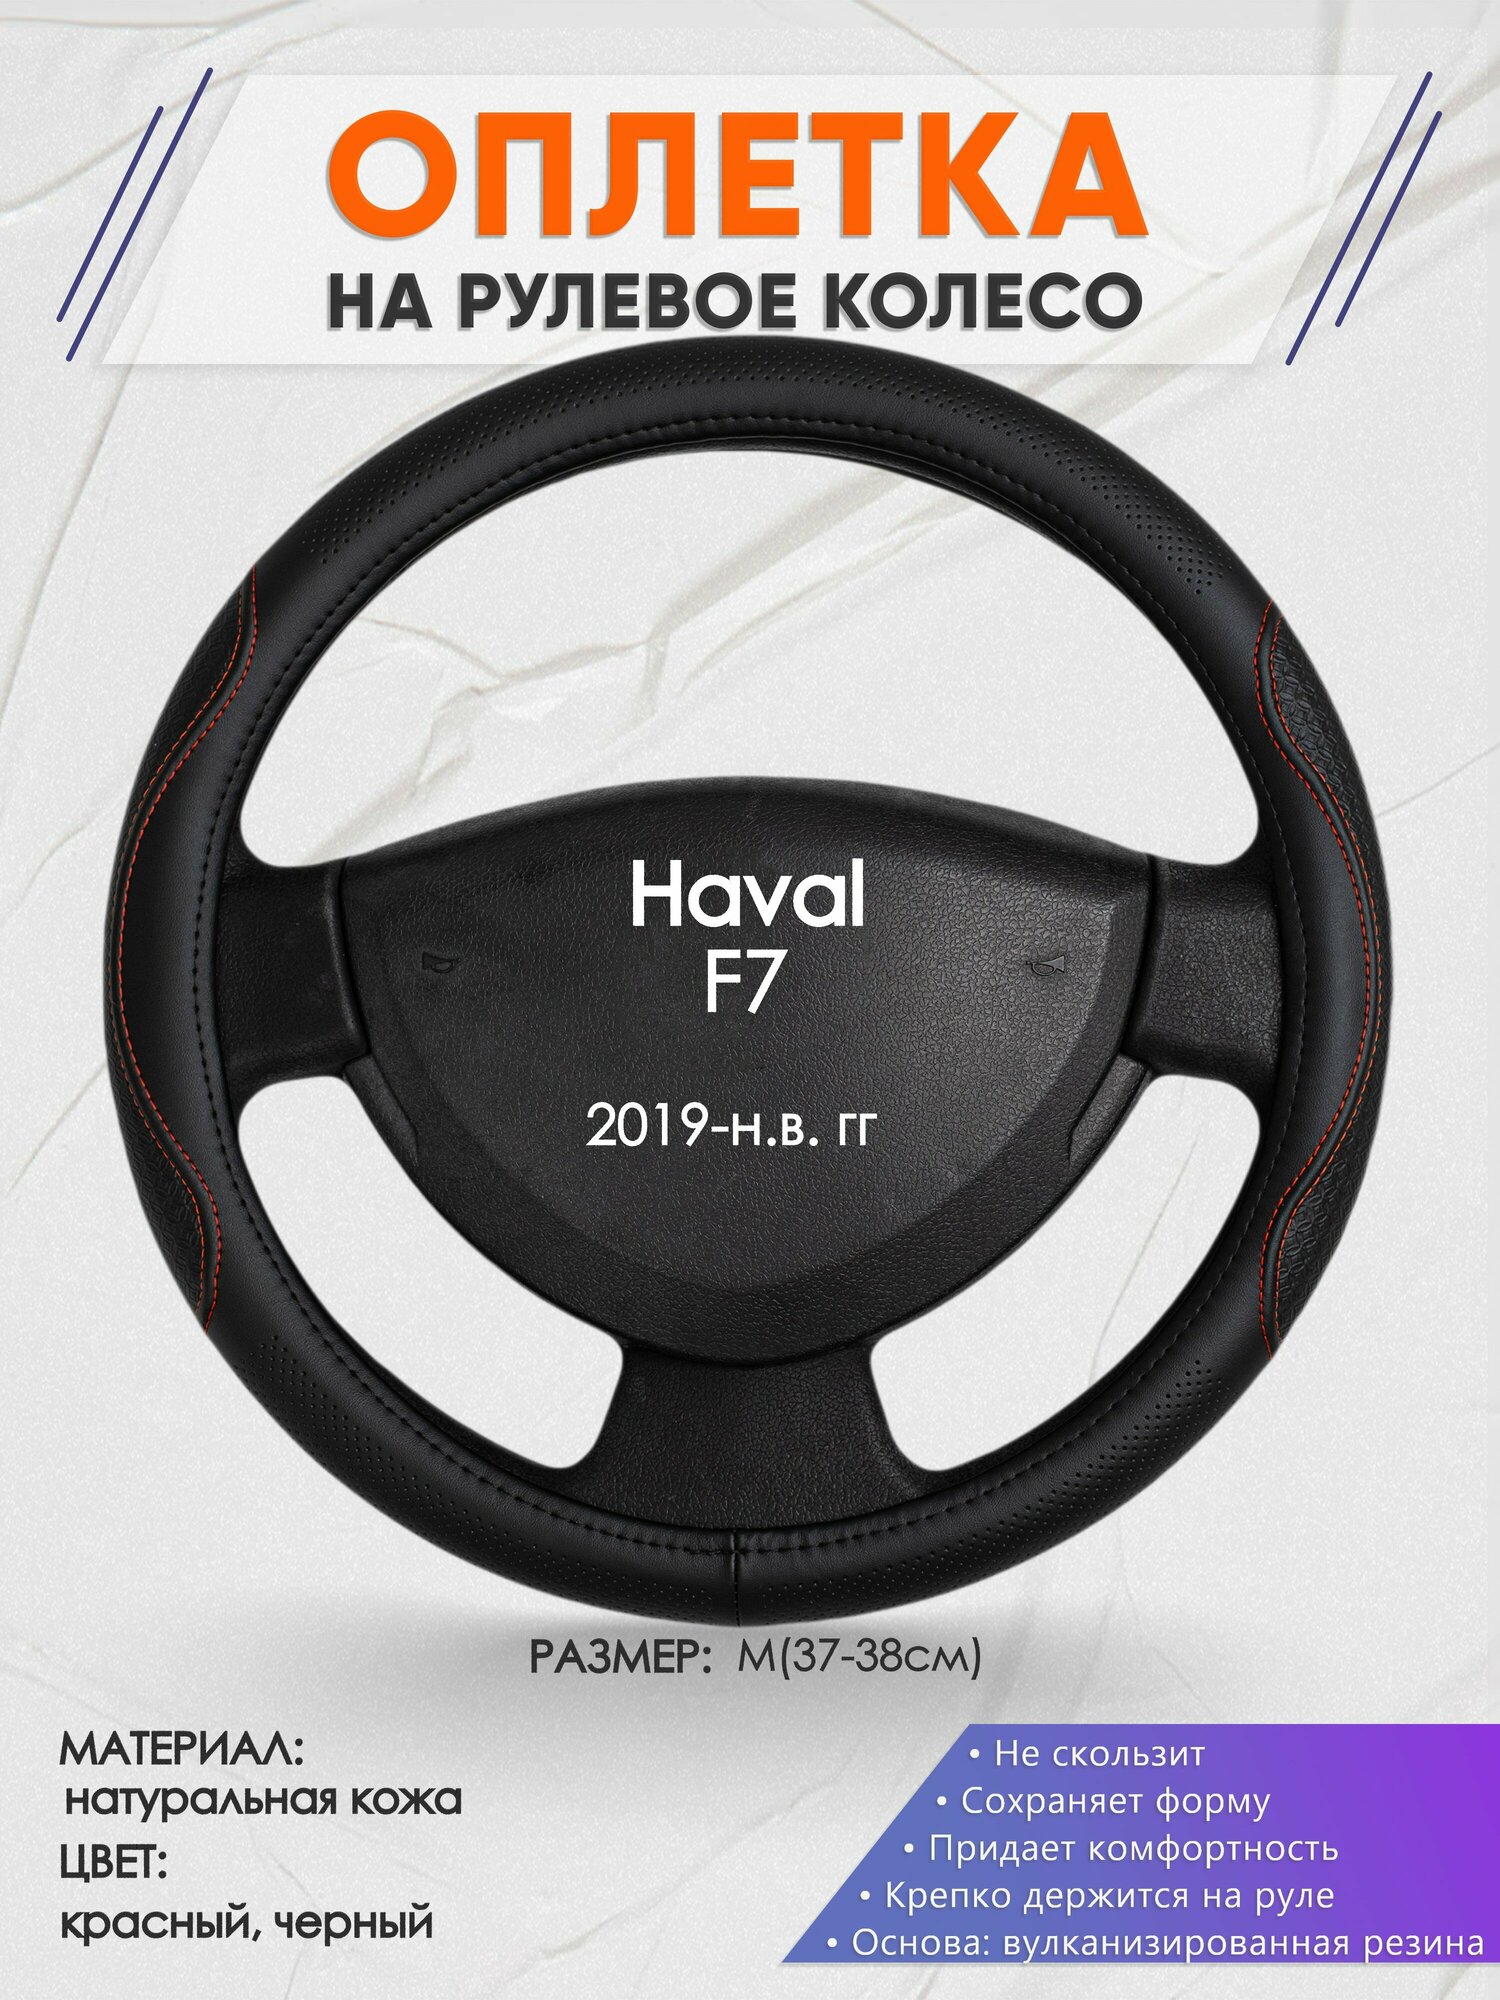 Оплетка на руль для Haval F7 (Хавал ф7) 2019-н. в M(37-38см) Натуральная кожа 29